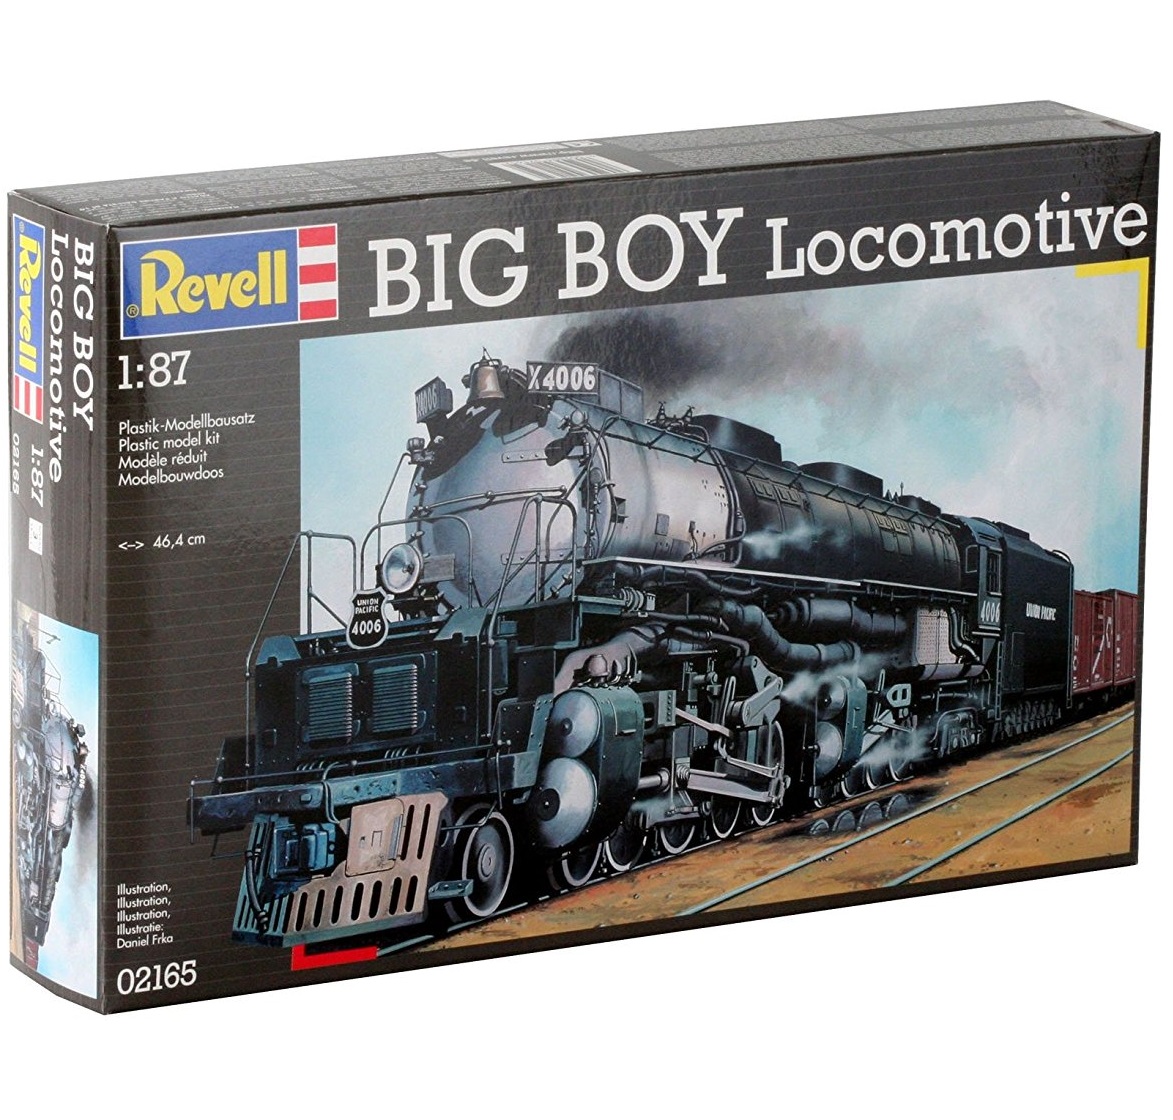 Big Boy Locomotive (1:87)